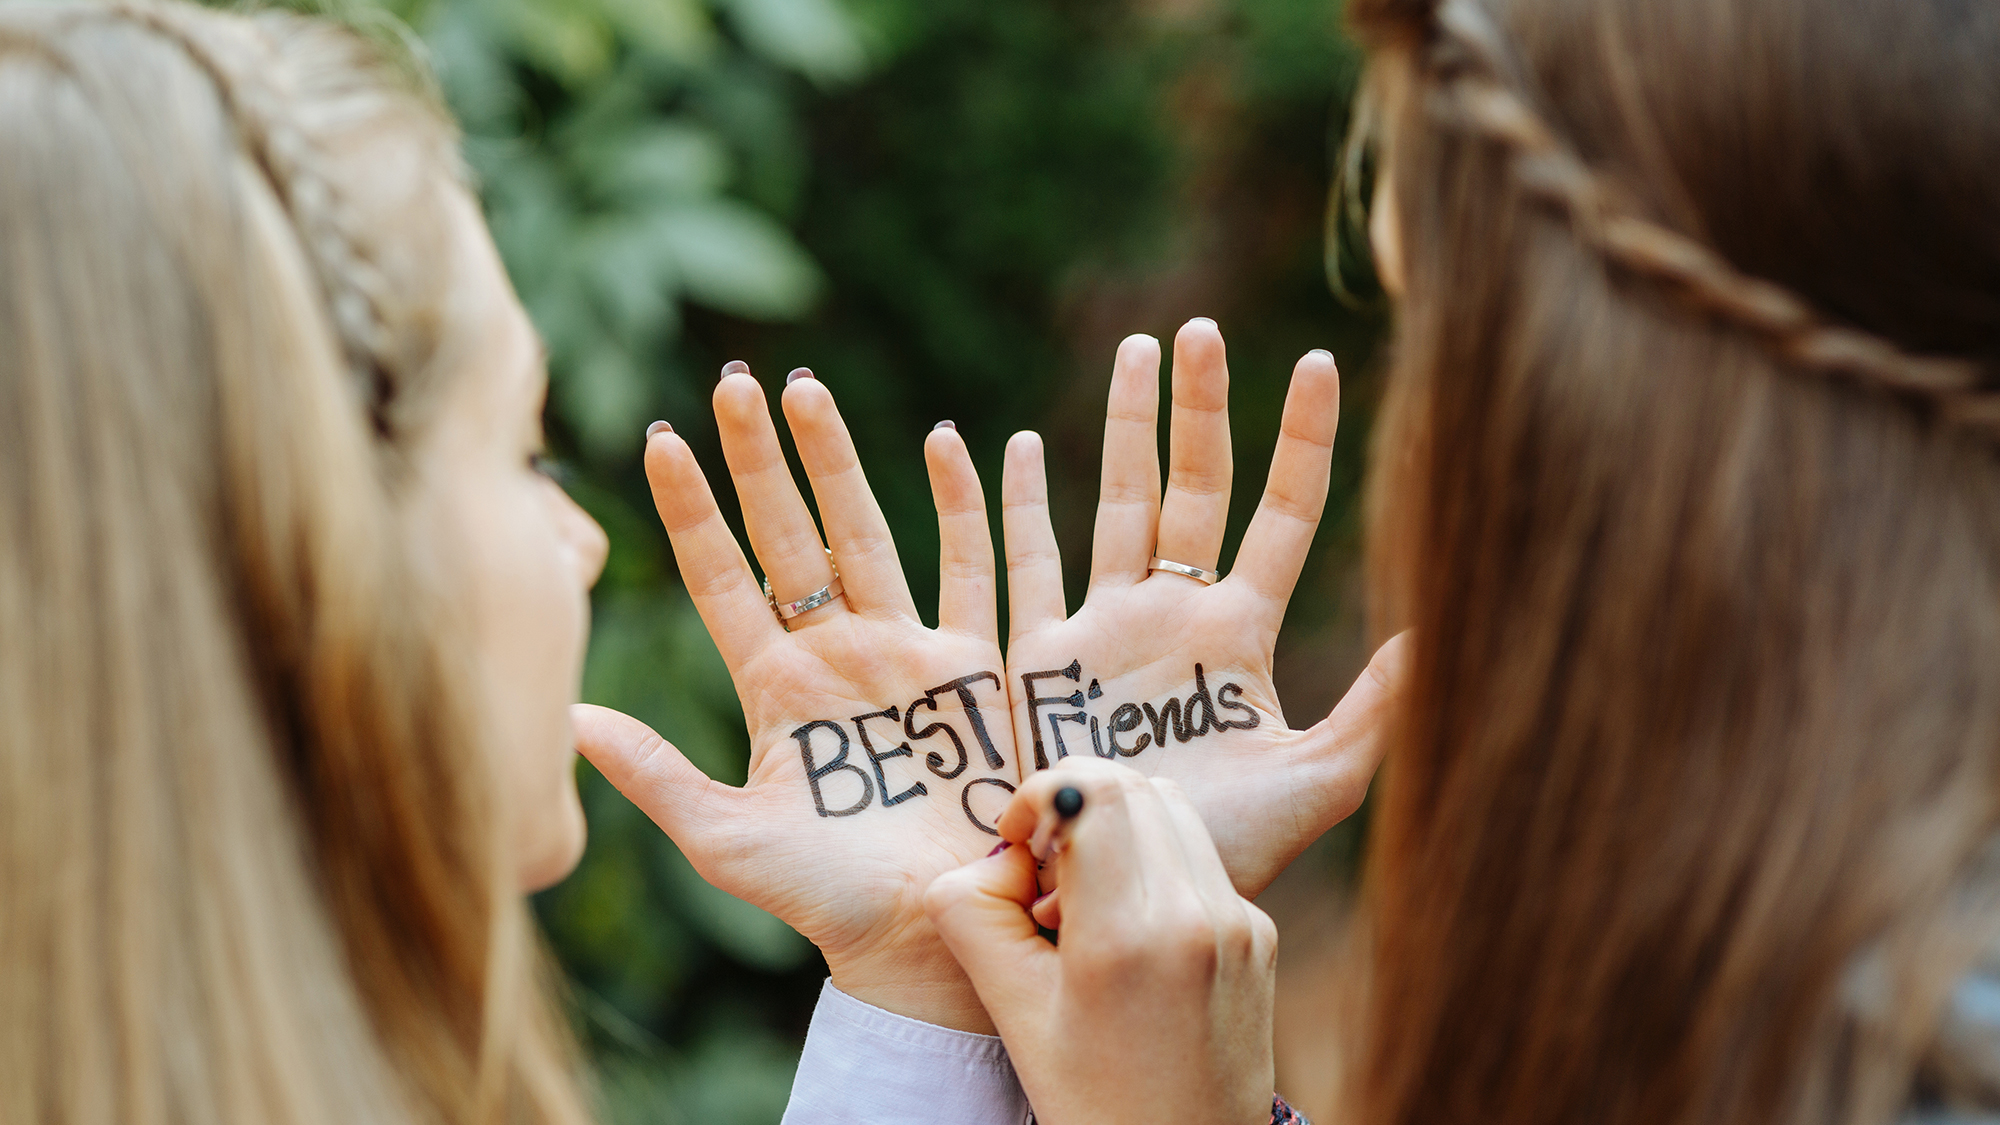 Zwei Mädchen schreiben "Best Friends" auf ihre Hände